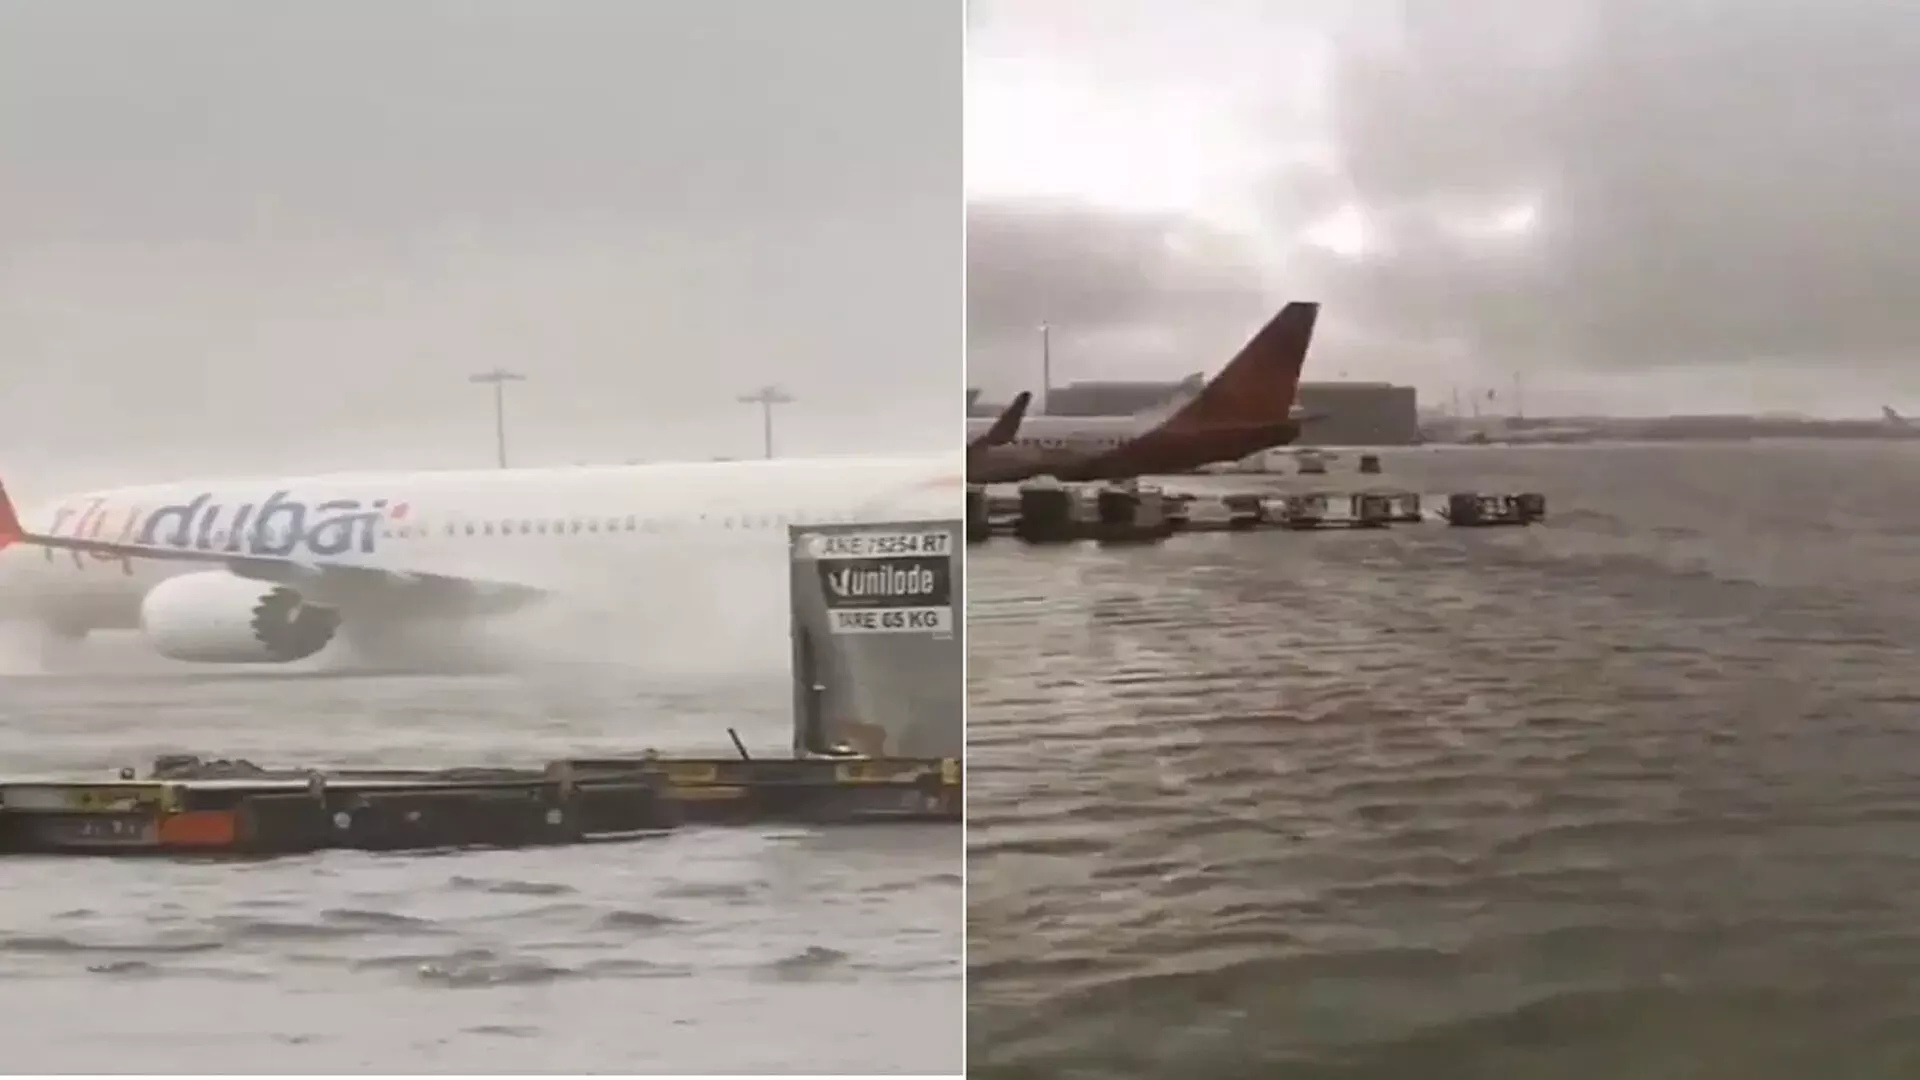 दुबई एयरपोर्ट पर पानी भर गया, भारी बारिश के बाद उड़ानें डायवर्ट की गईं